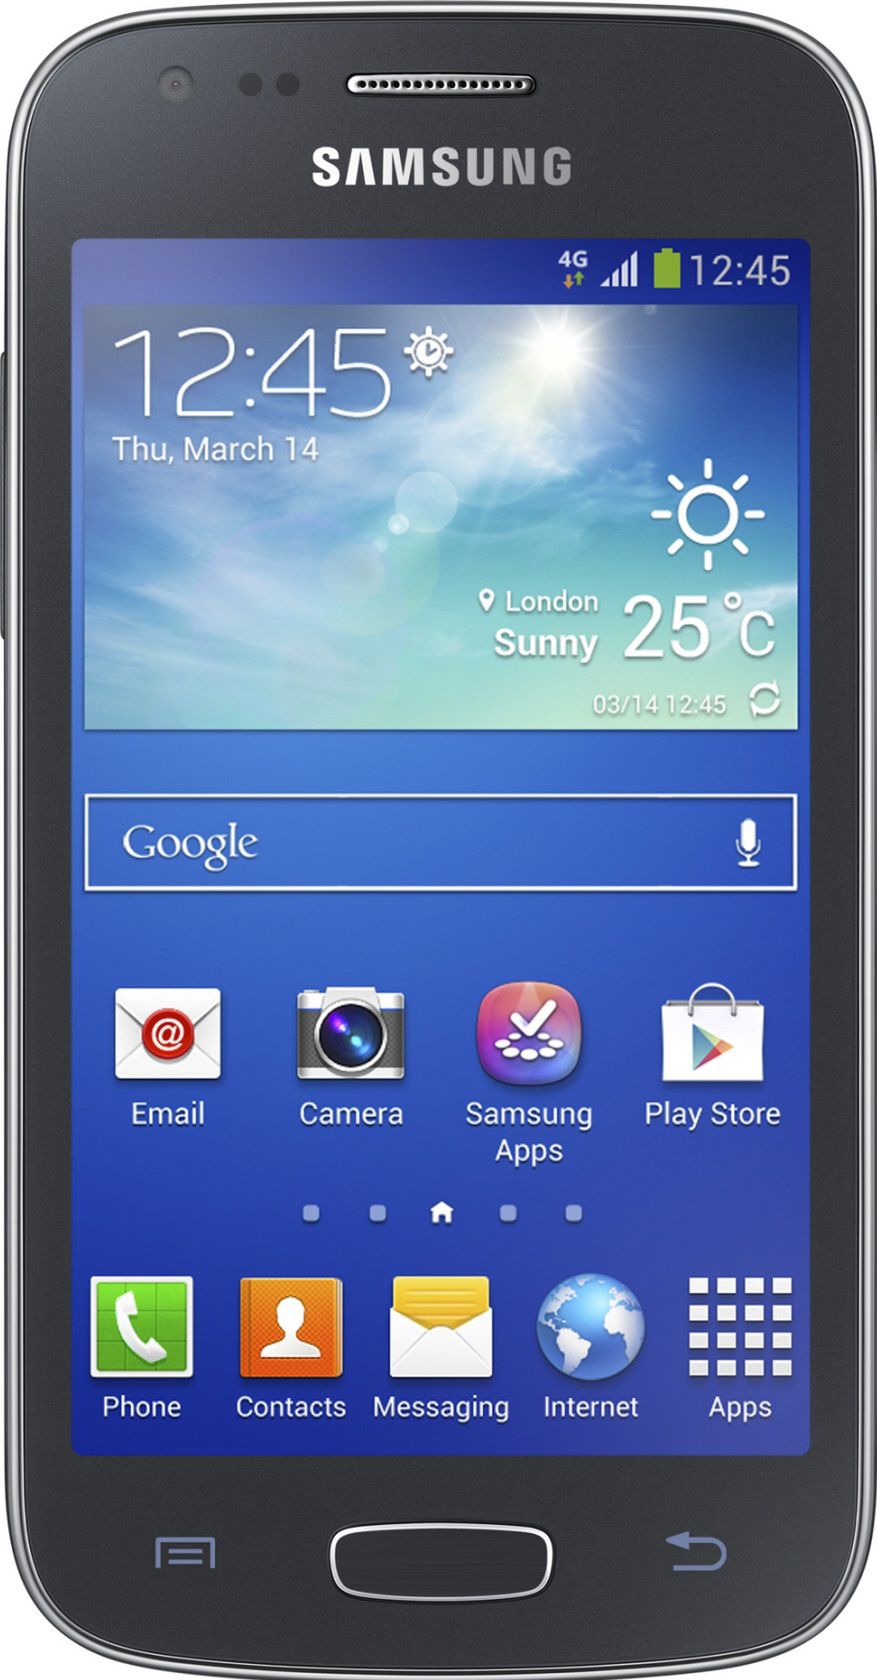 Samsung Galaxy Ace 3 za pomocą przedniego aparatu wykrywa, czy użytkownik korzysta z telefonu